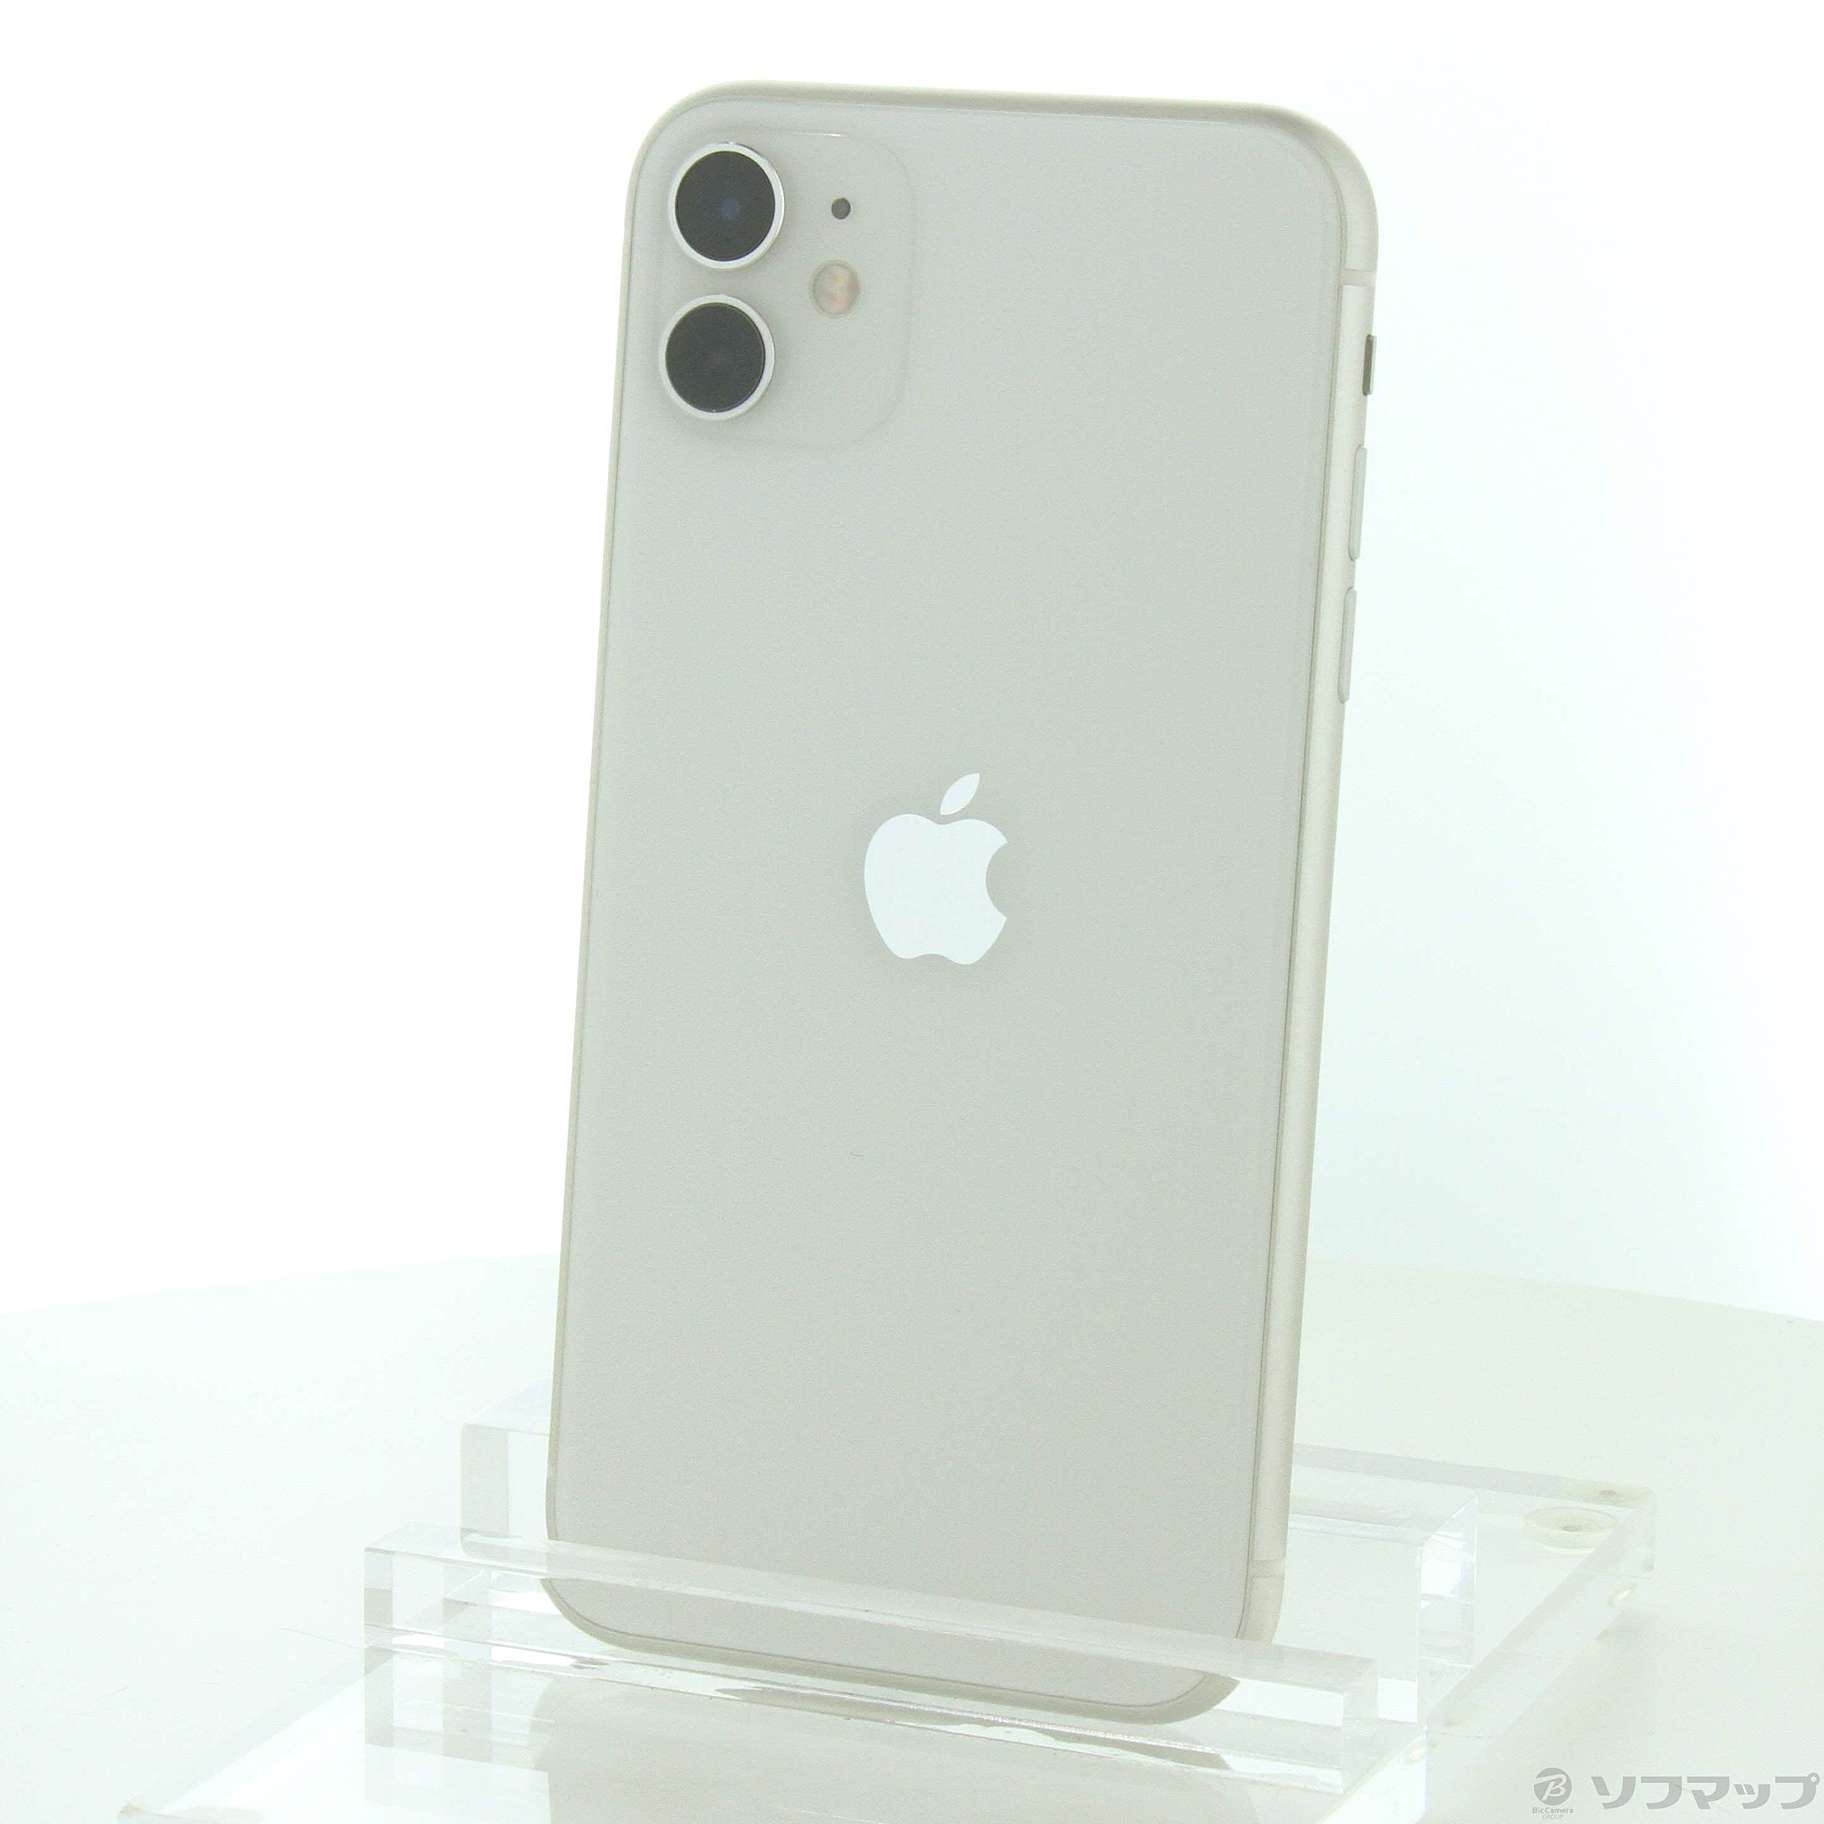 お買い得の通販 【限定値下げ】iPhone 11 ホワイト 128 GB SIMフリー